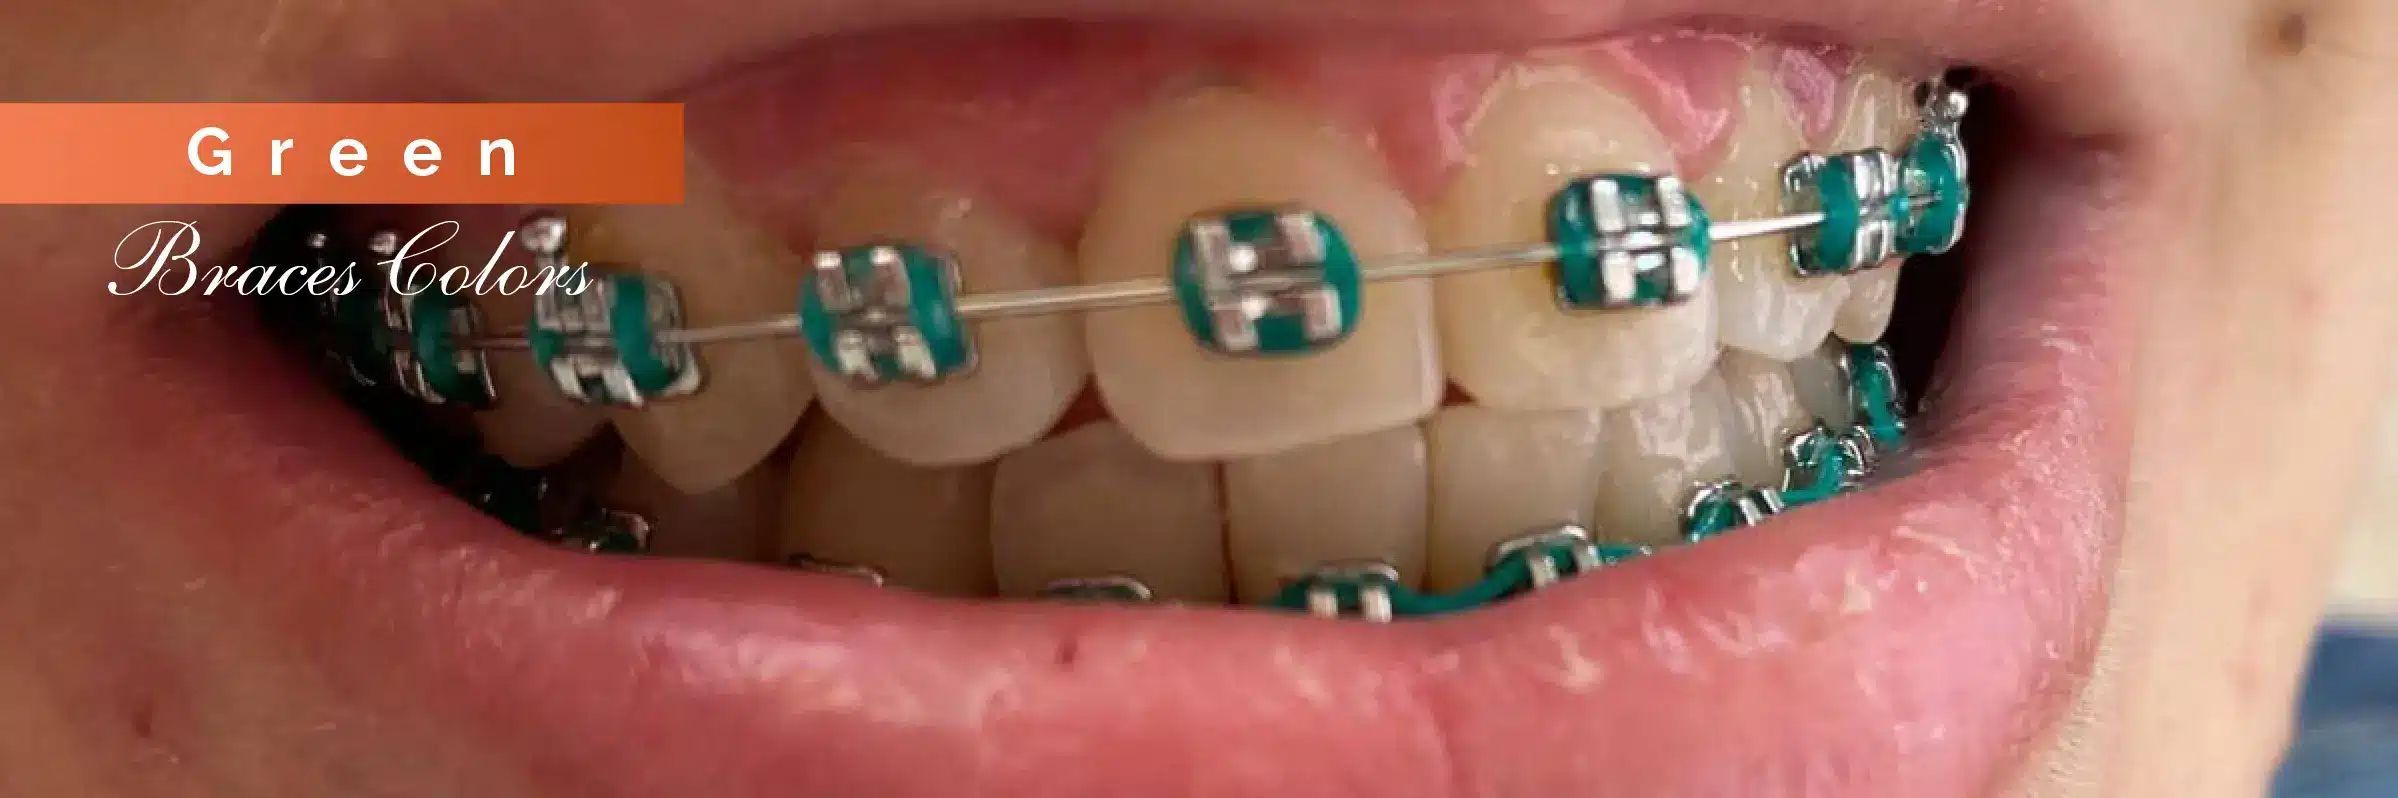 green color braces